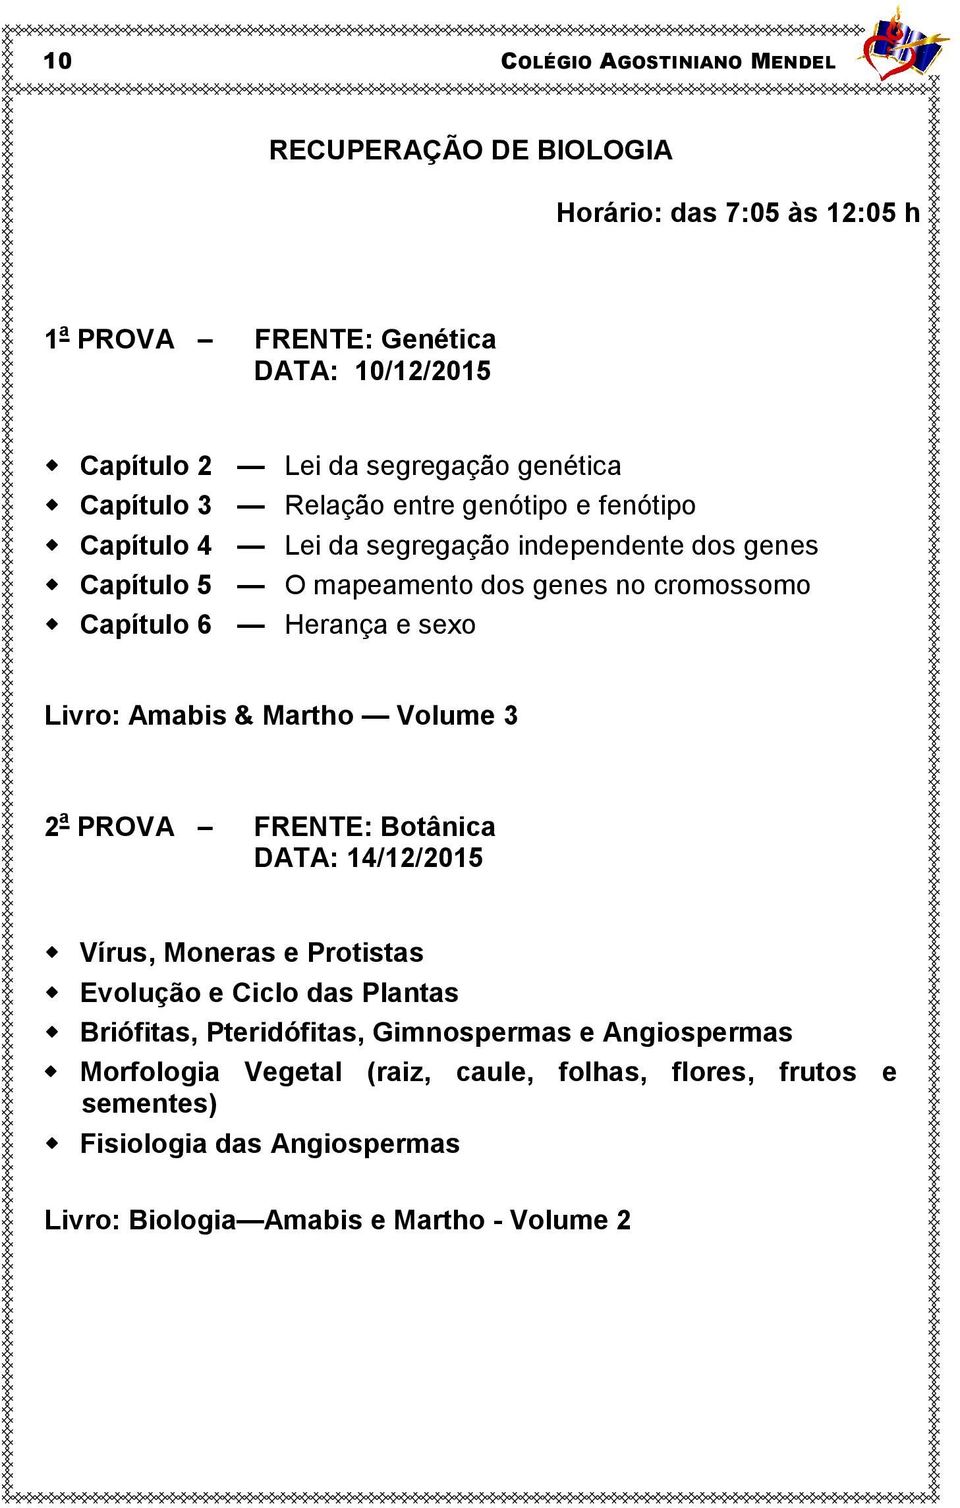 Livro: Amabis & Martho Volume 3 2 a PROVA FRENTE: Botânica DATA: 14/12/2015 Vírus, Moneras e Protistas Evolução e Ciclo das Plantas Briófitas, Pteridófitas,